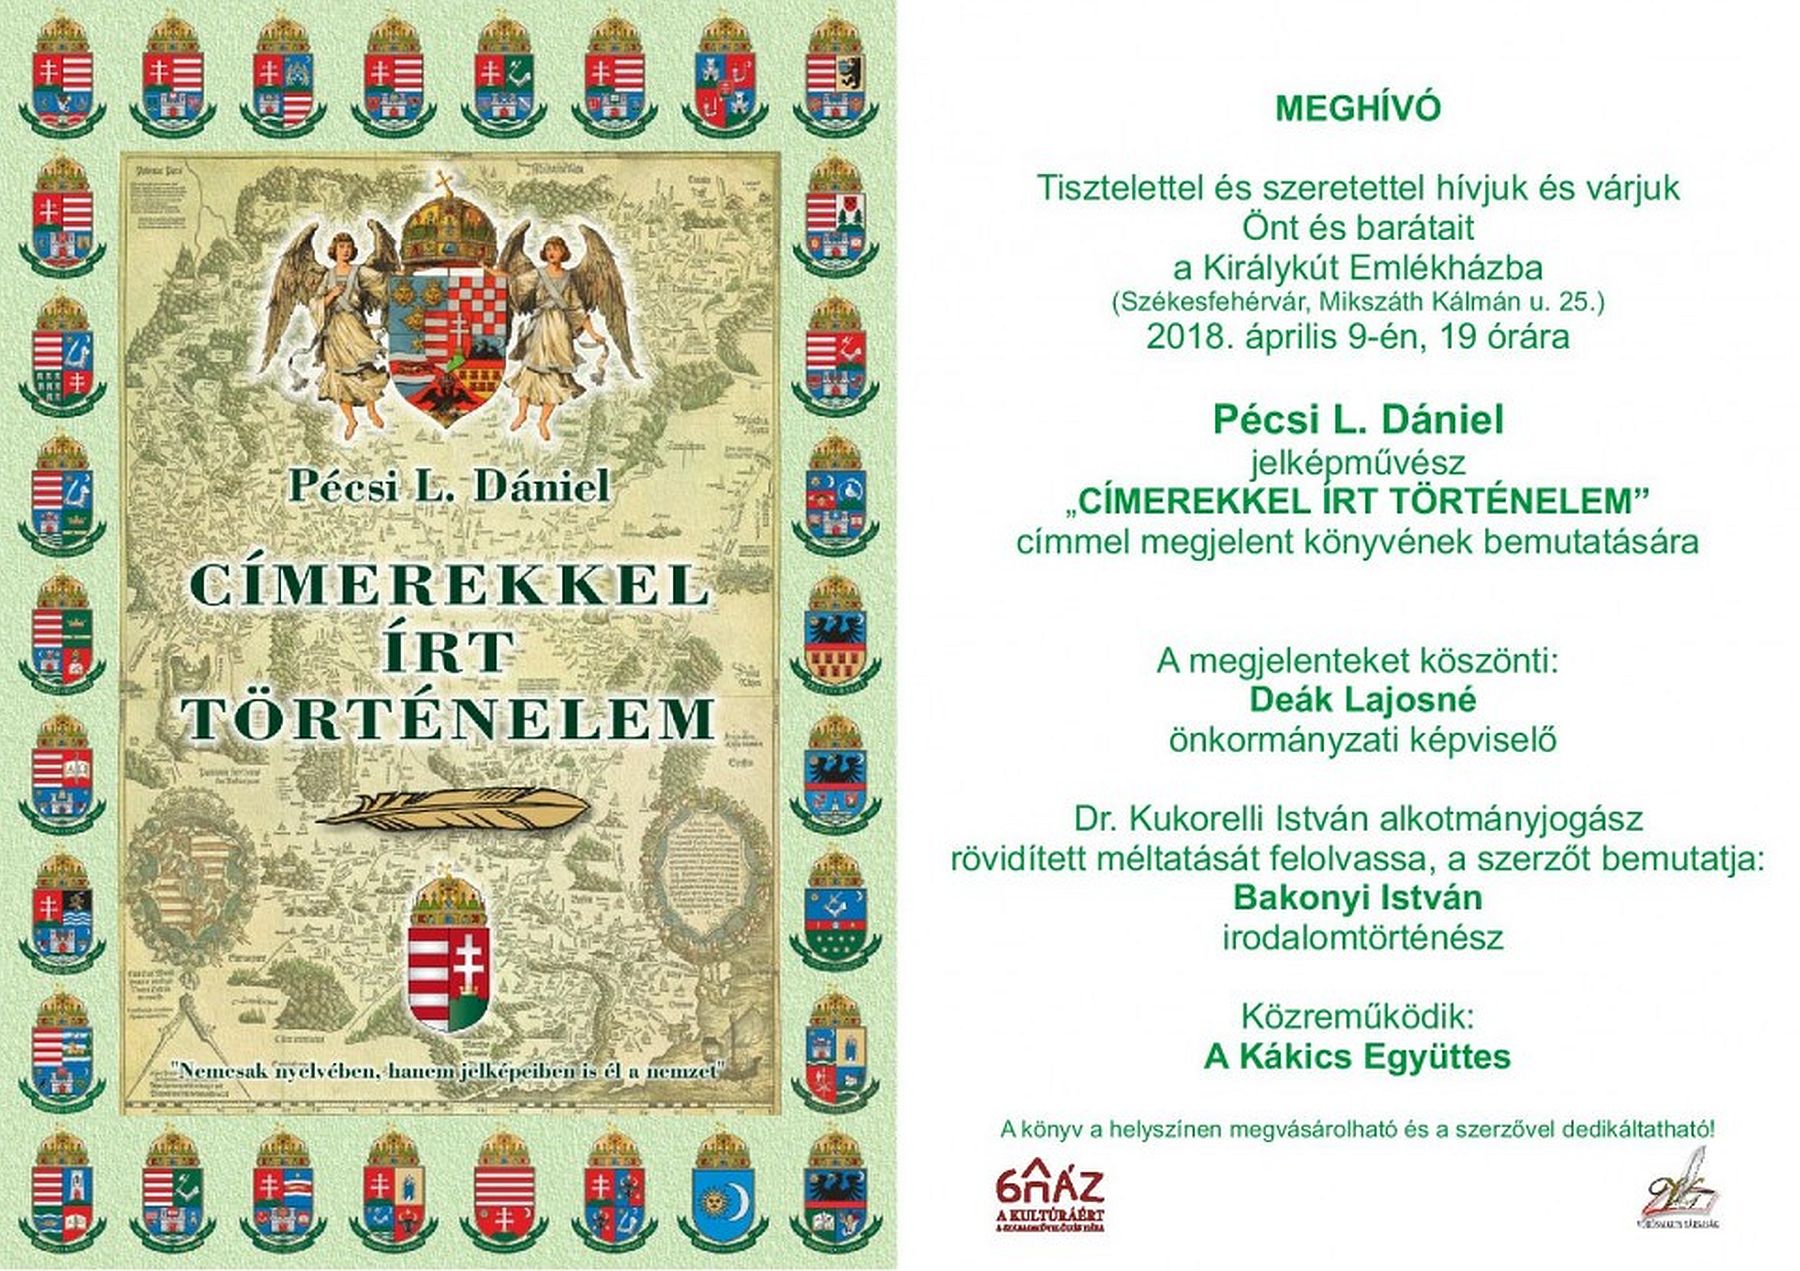 Címerekkel írt történelem - Pécsi L. Dániel kötetbemutatója a Királykút Emlékházban